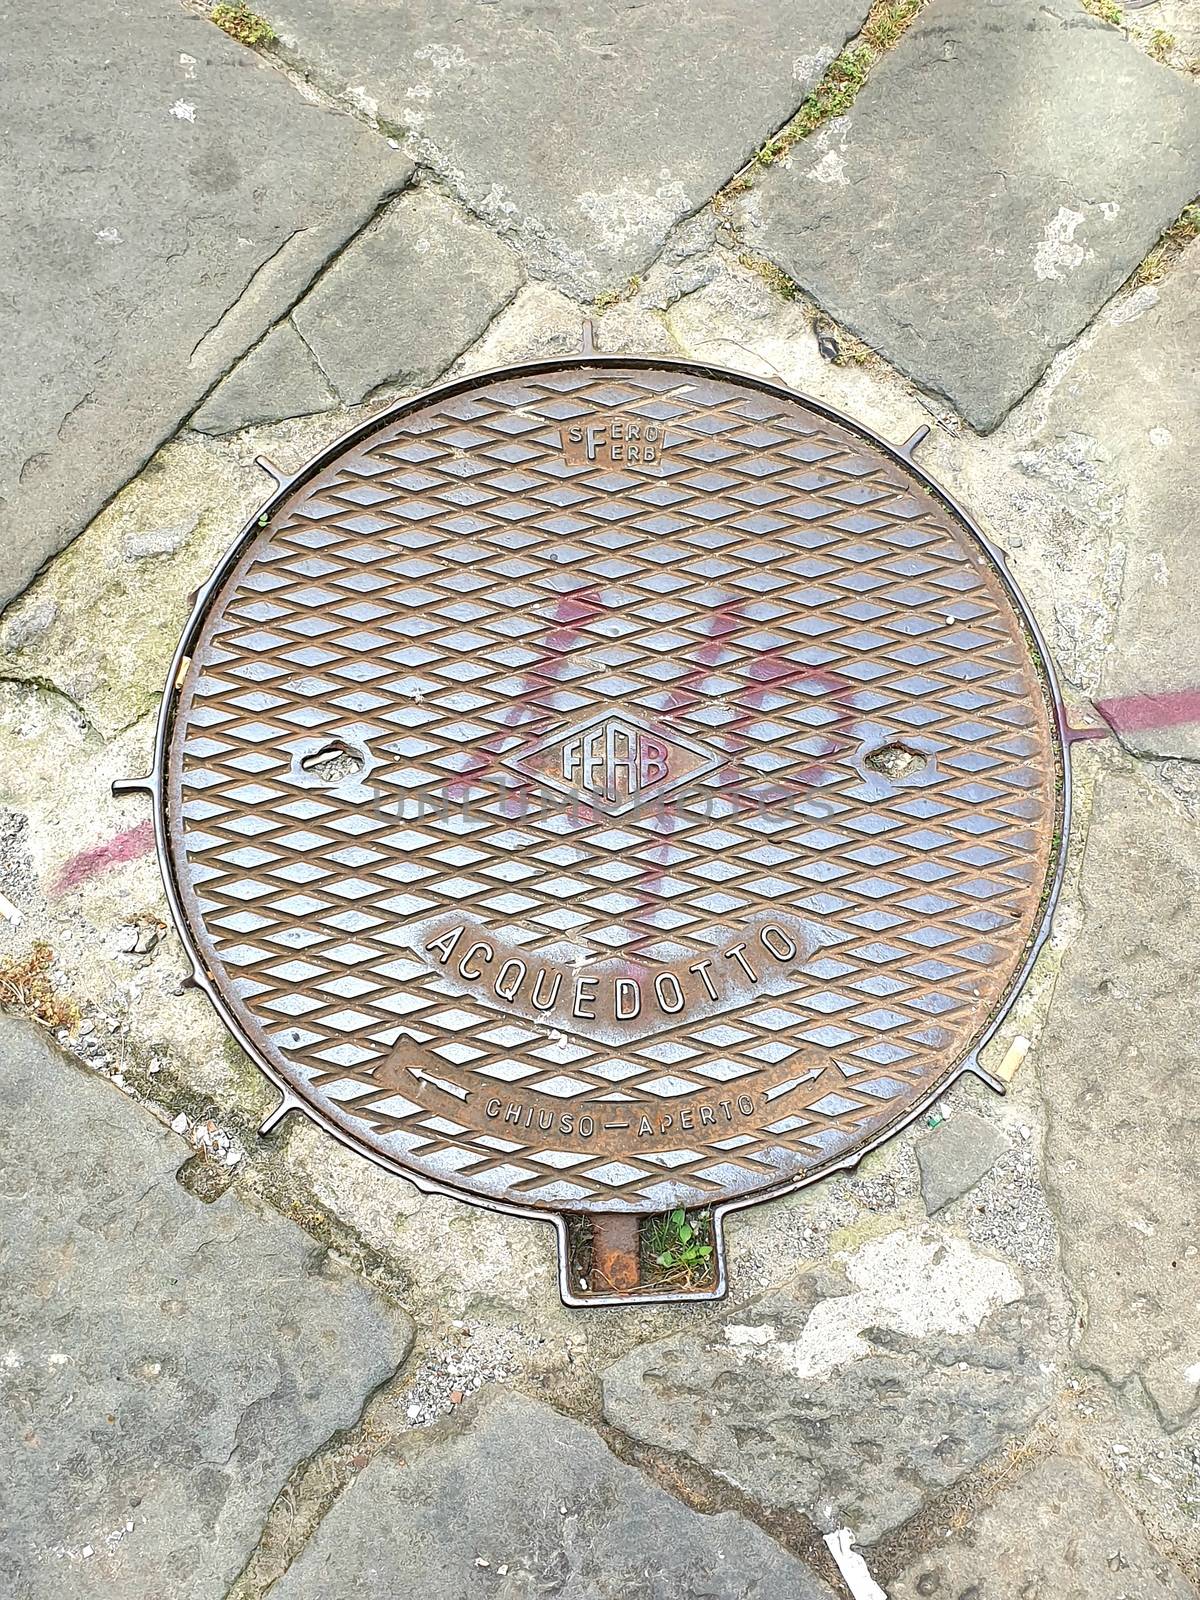 Manhole with graffiti in Pisa by matteobartolini